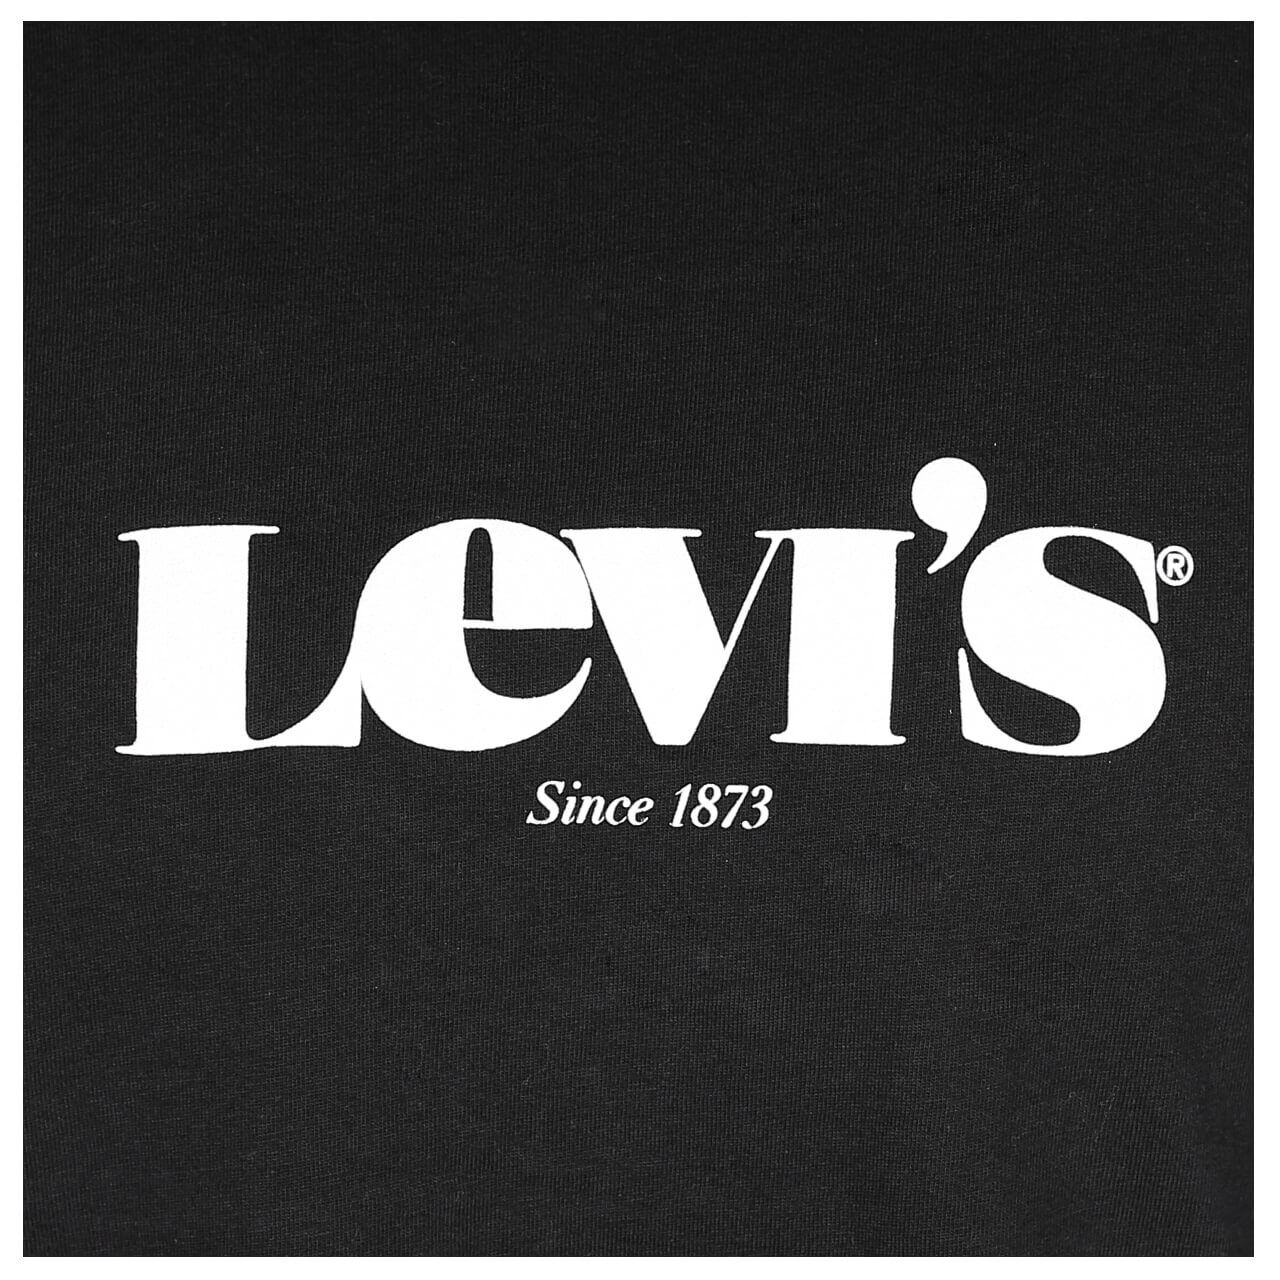 Levi's T-Shirt für Herren in Schwarz, FarbNr.: 0084